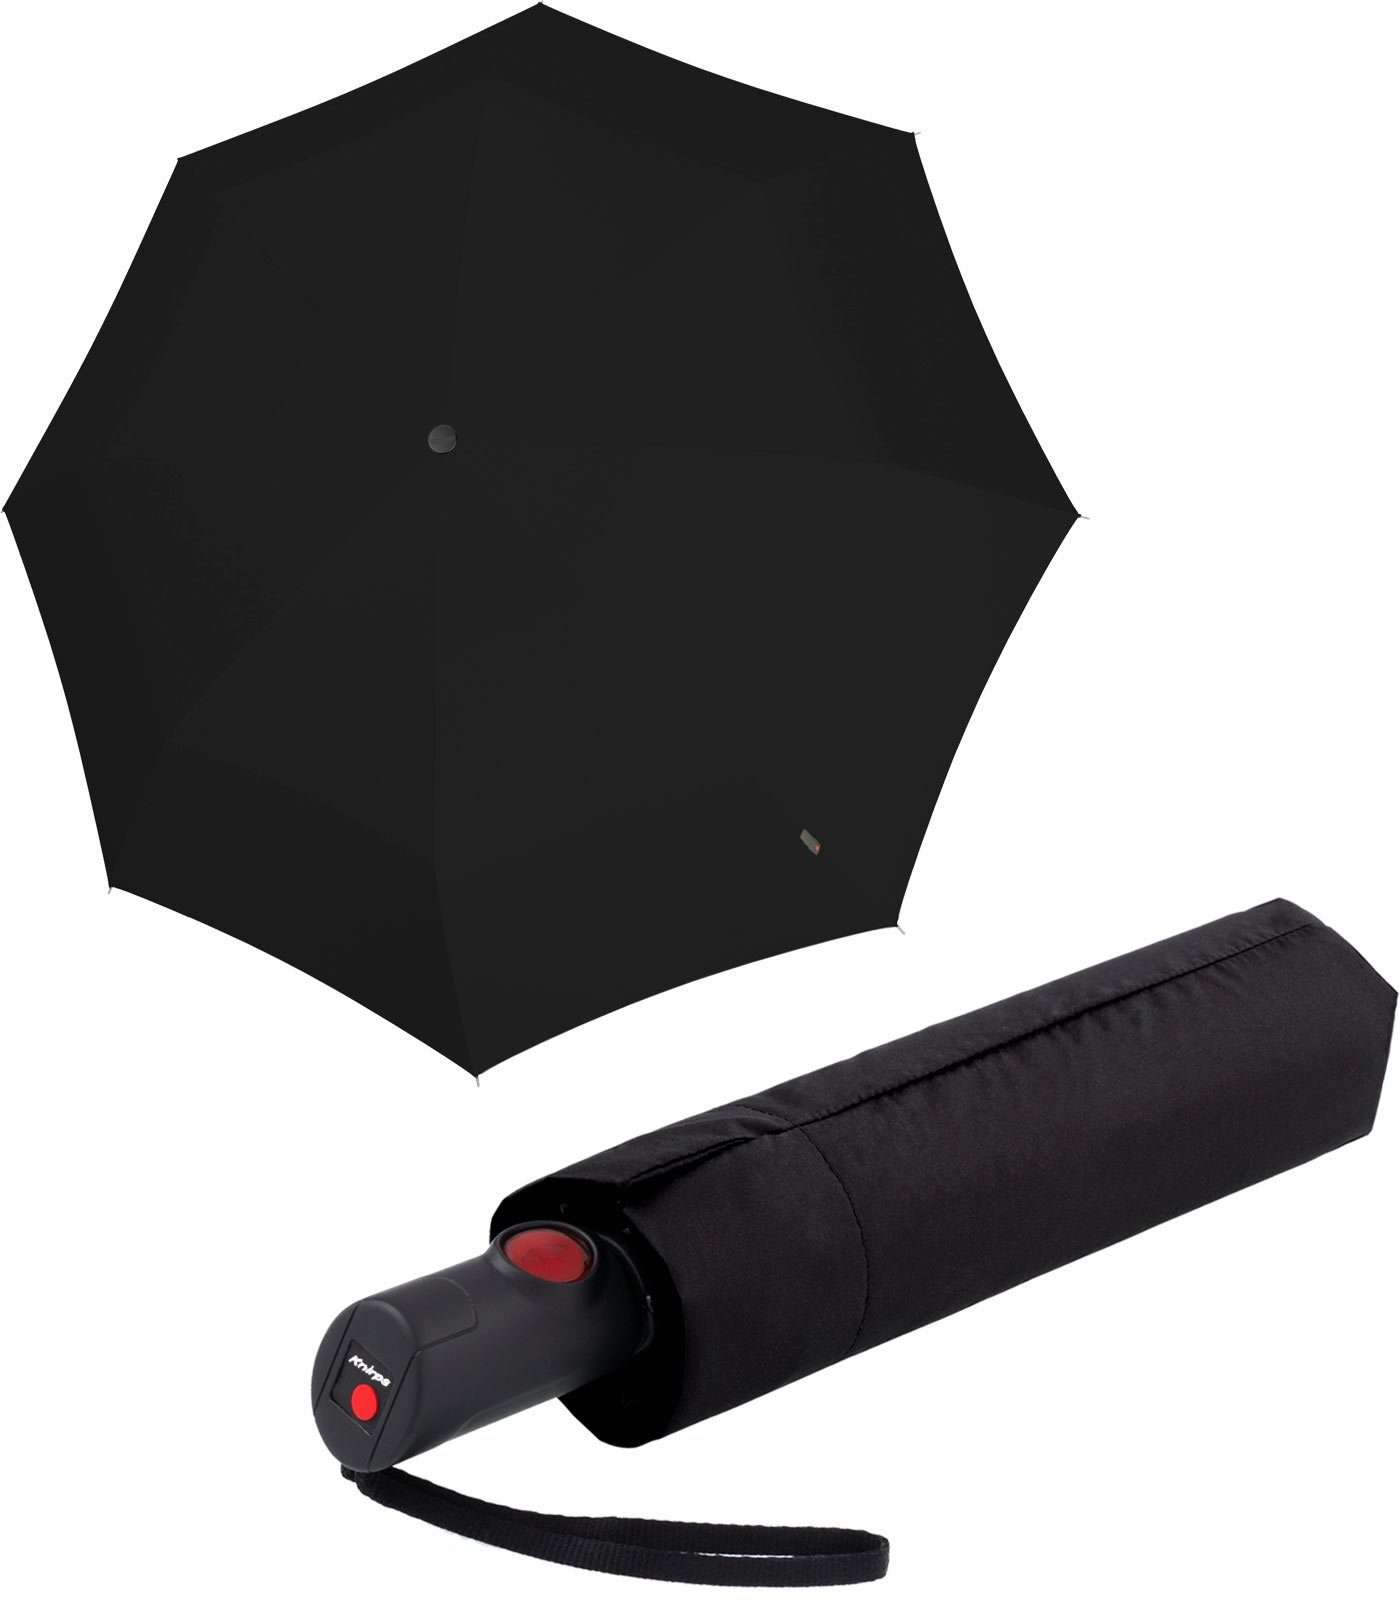 Taschenregenschirm Auf-Zu-Automatik, Knirps® stabil medium Duomatic C.205 und leicht Black